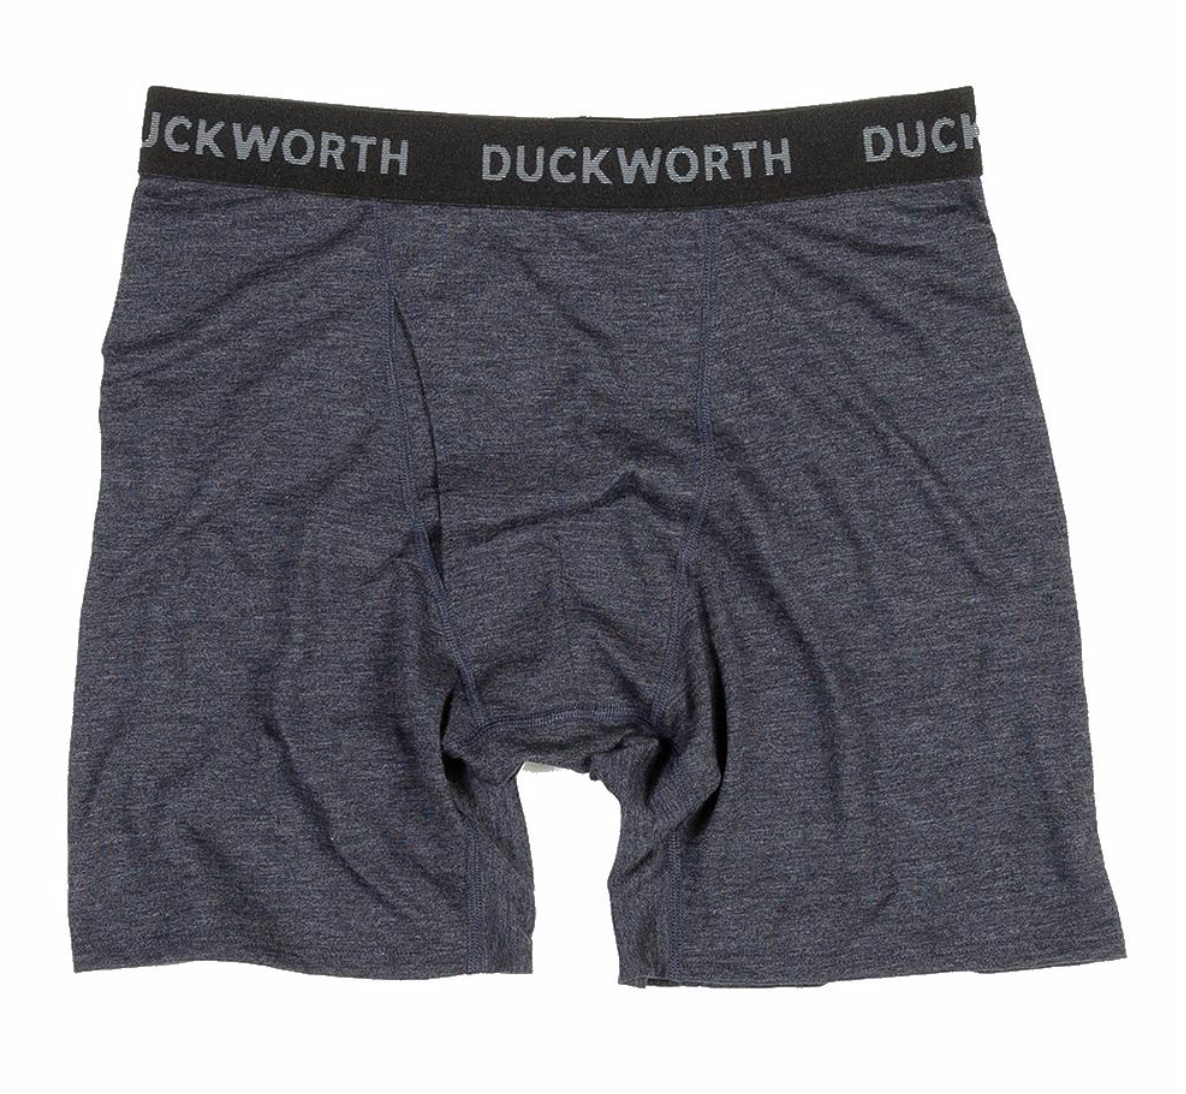 duckworth vapor brief travel underwear review